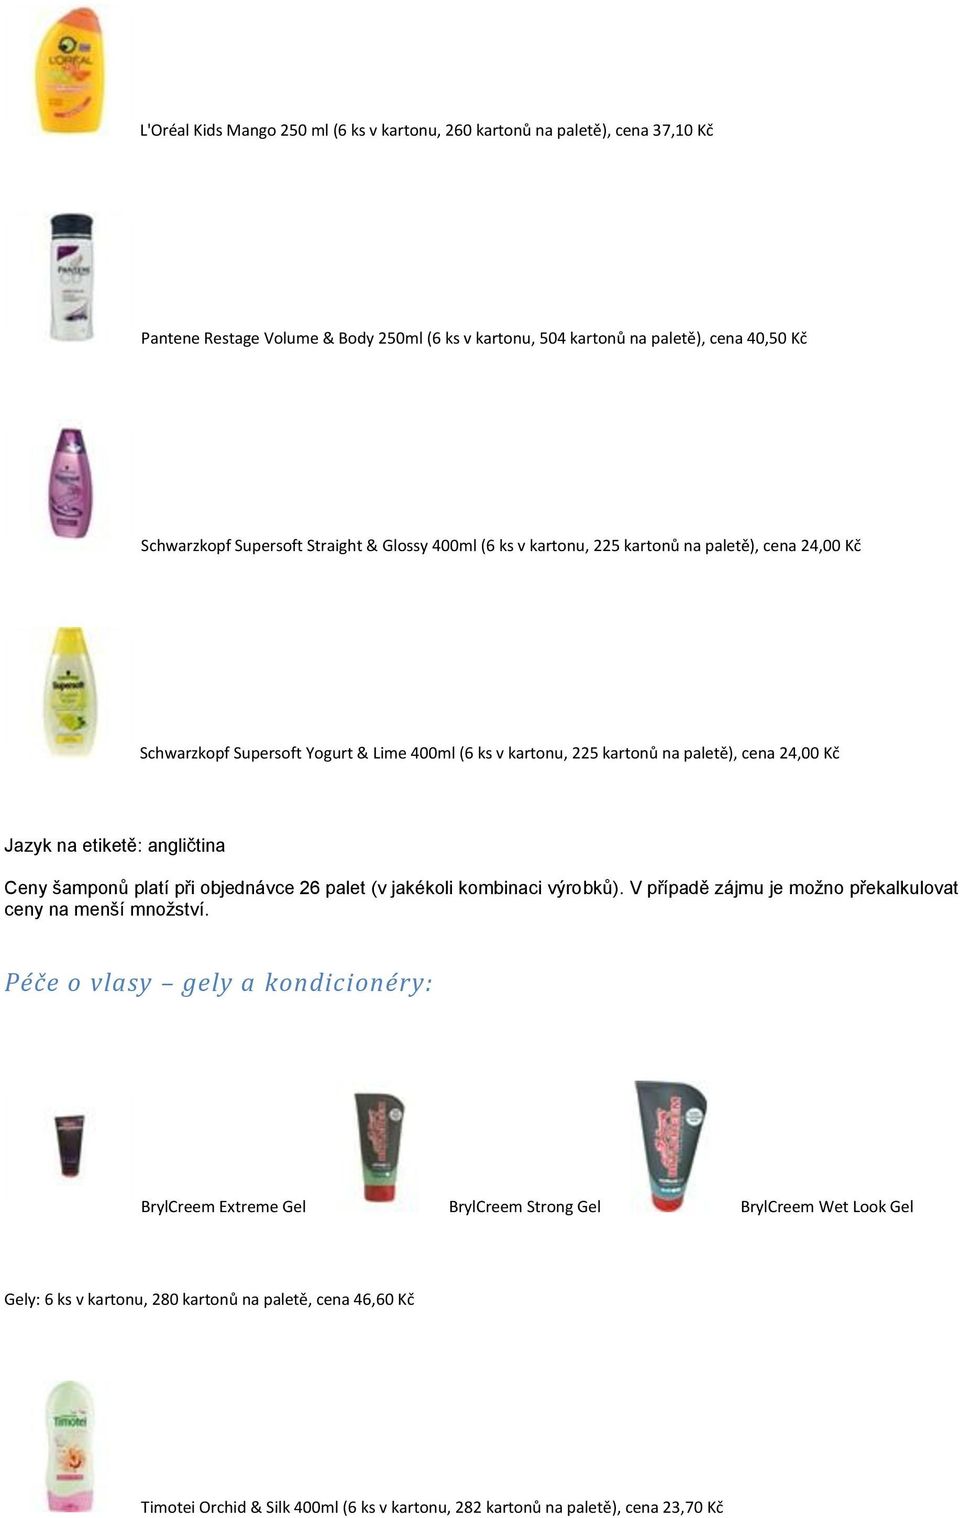 angličtina Ceny šamponů platí při objednávce 26 palet (v jakékoli kombinaci výrobků). V případě zájmu je možno překalkulovat ceny na menší množství.